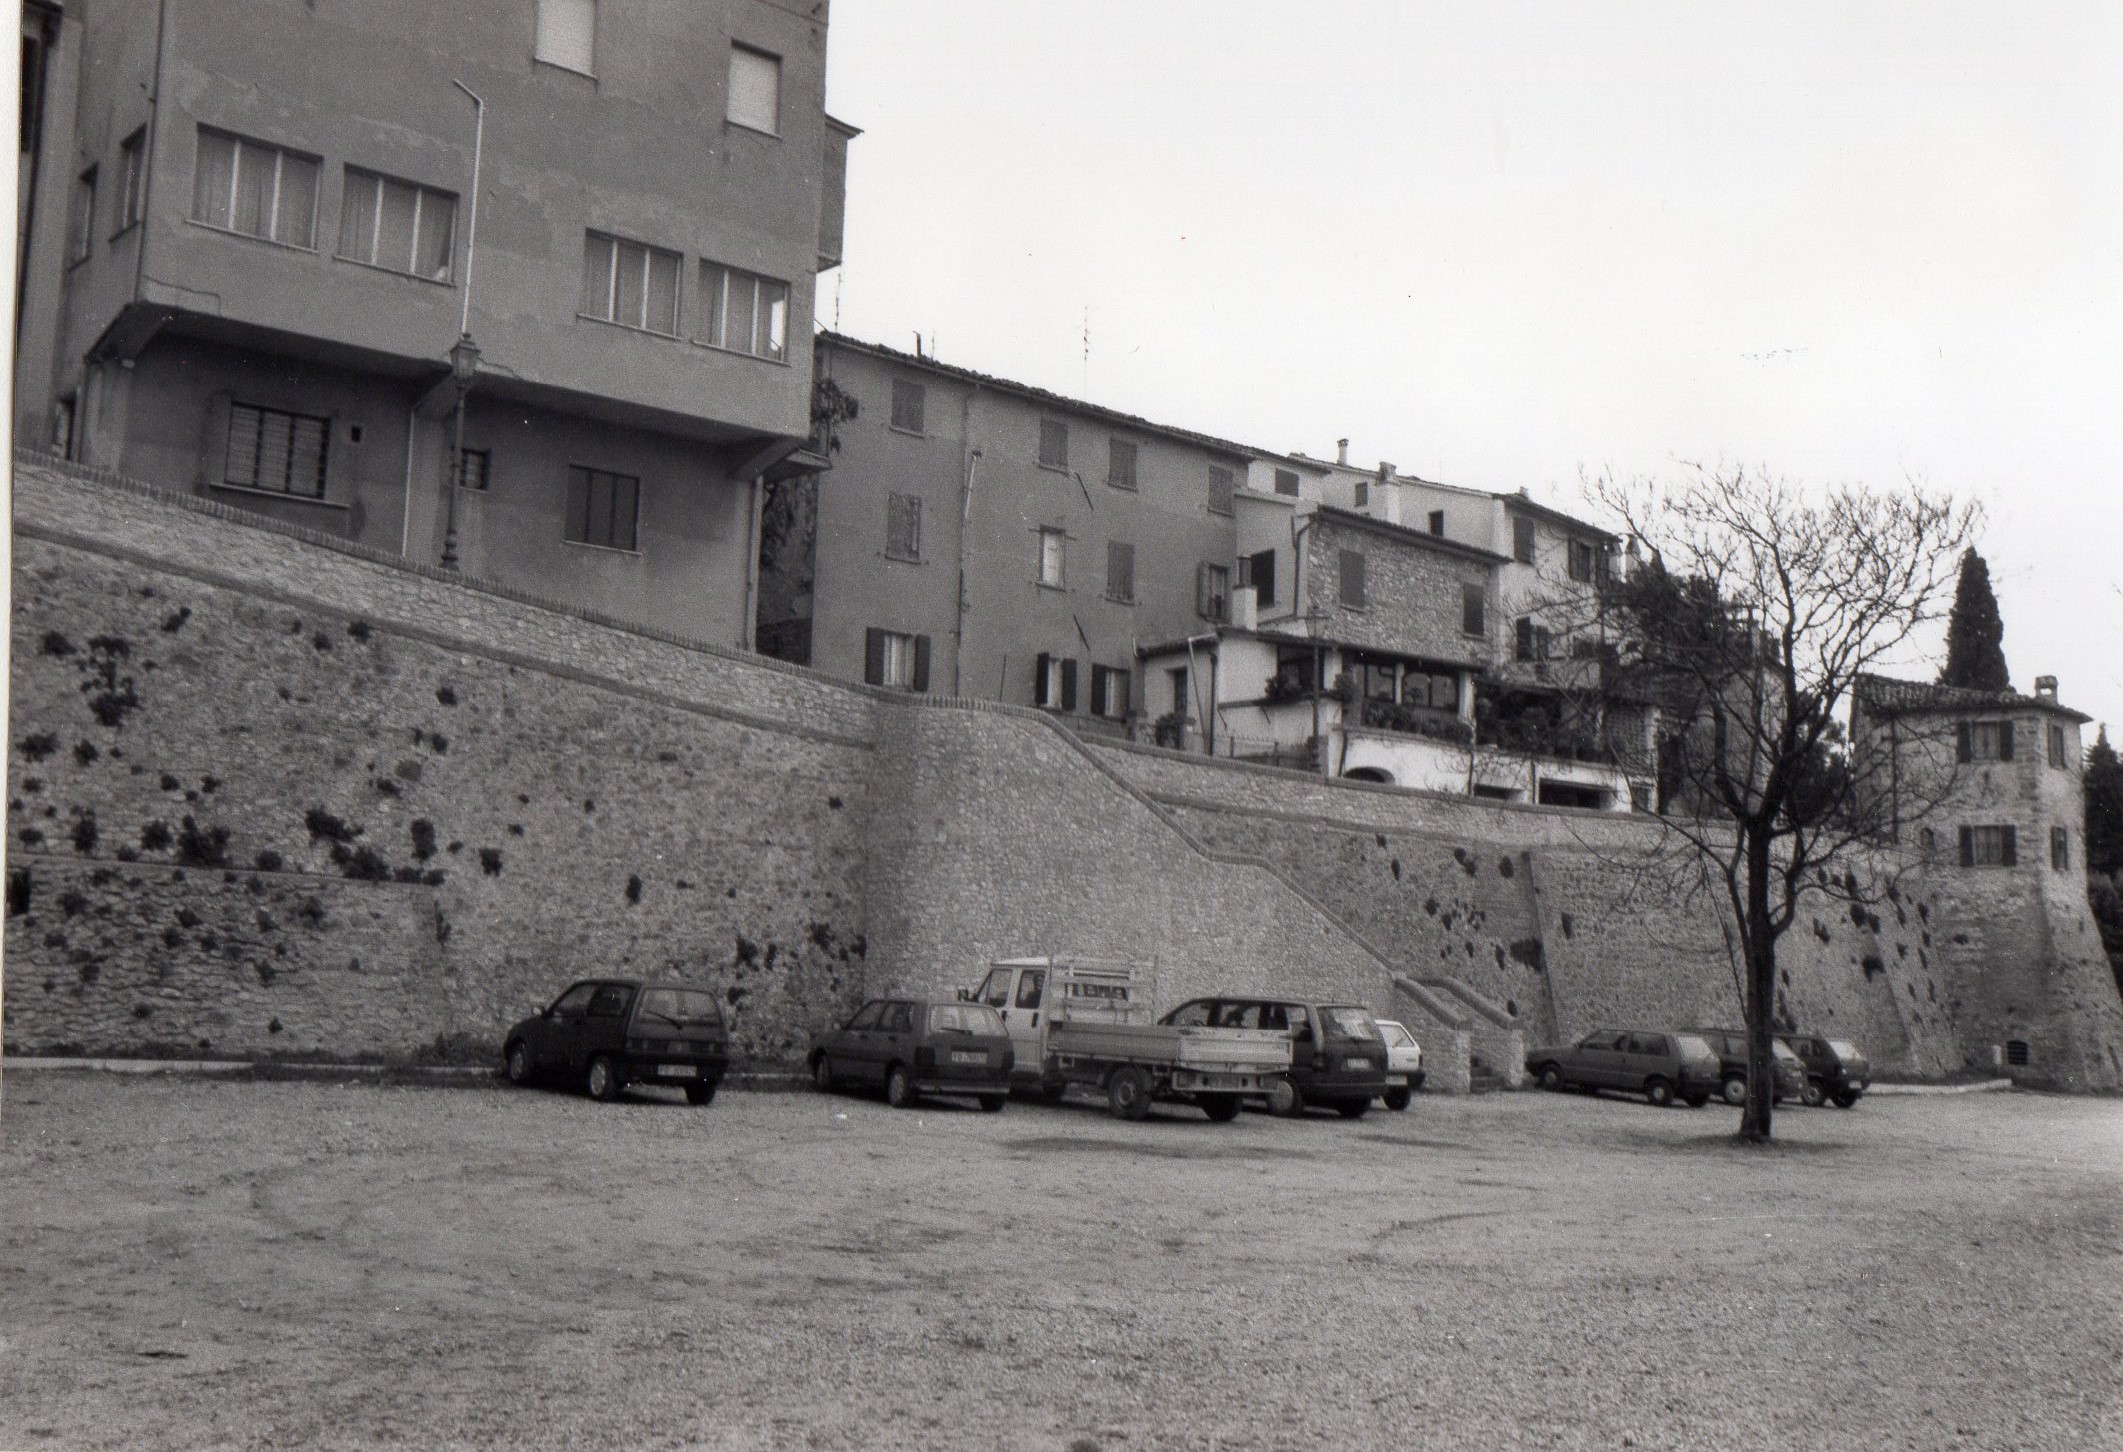 Mura comunali difensive (mura, comunali) - Verucchio (RN) 